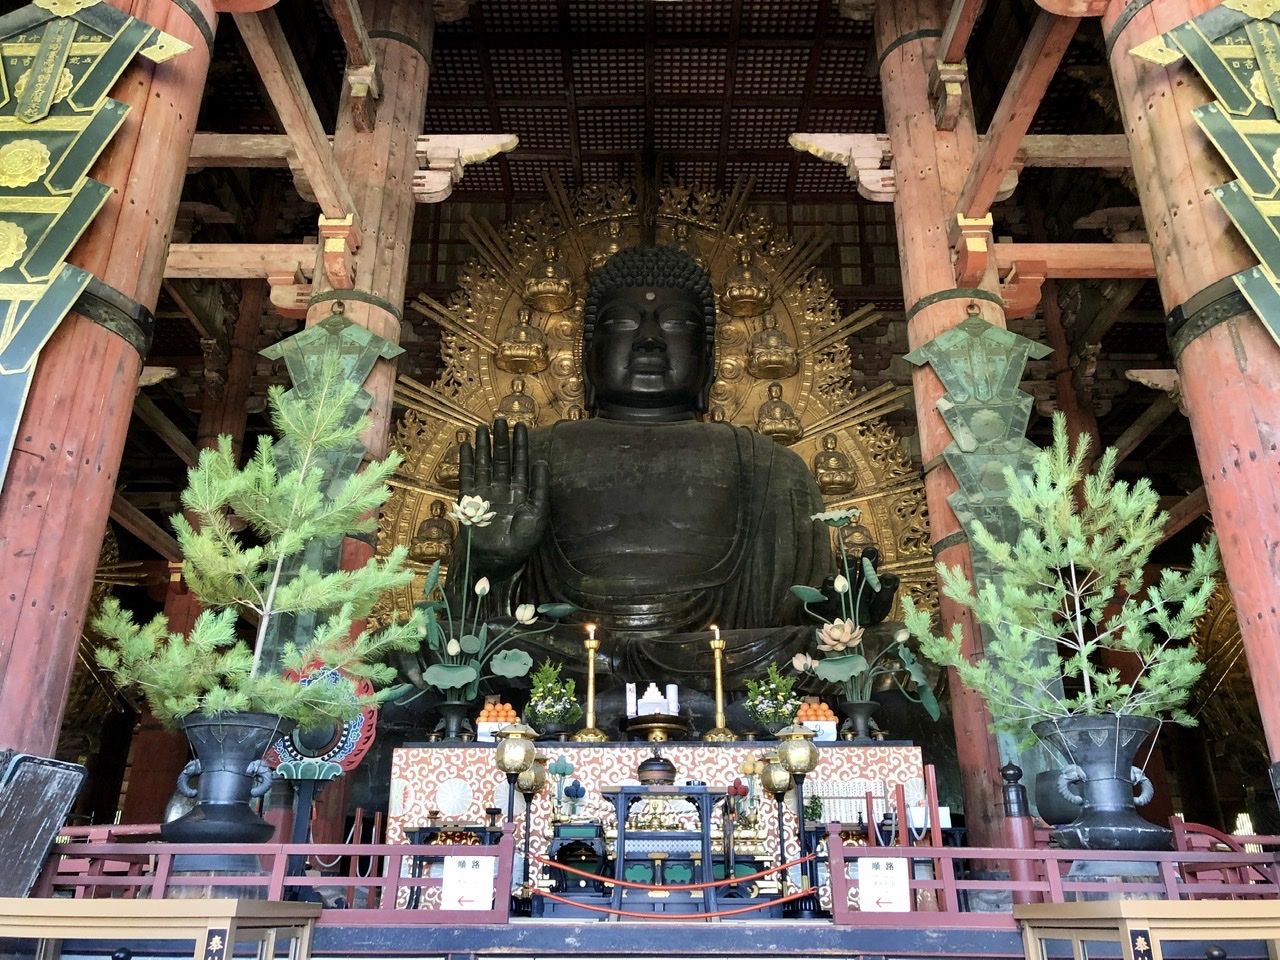 Giant Buddha in Todai-ji Temple